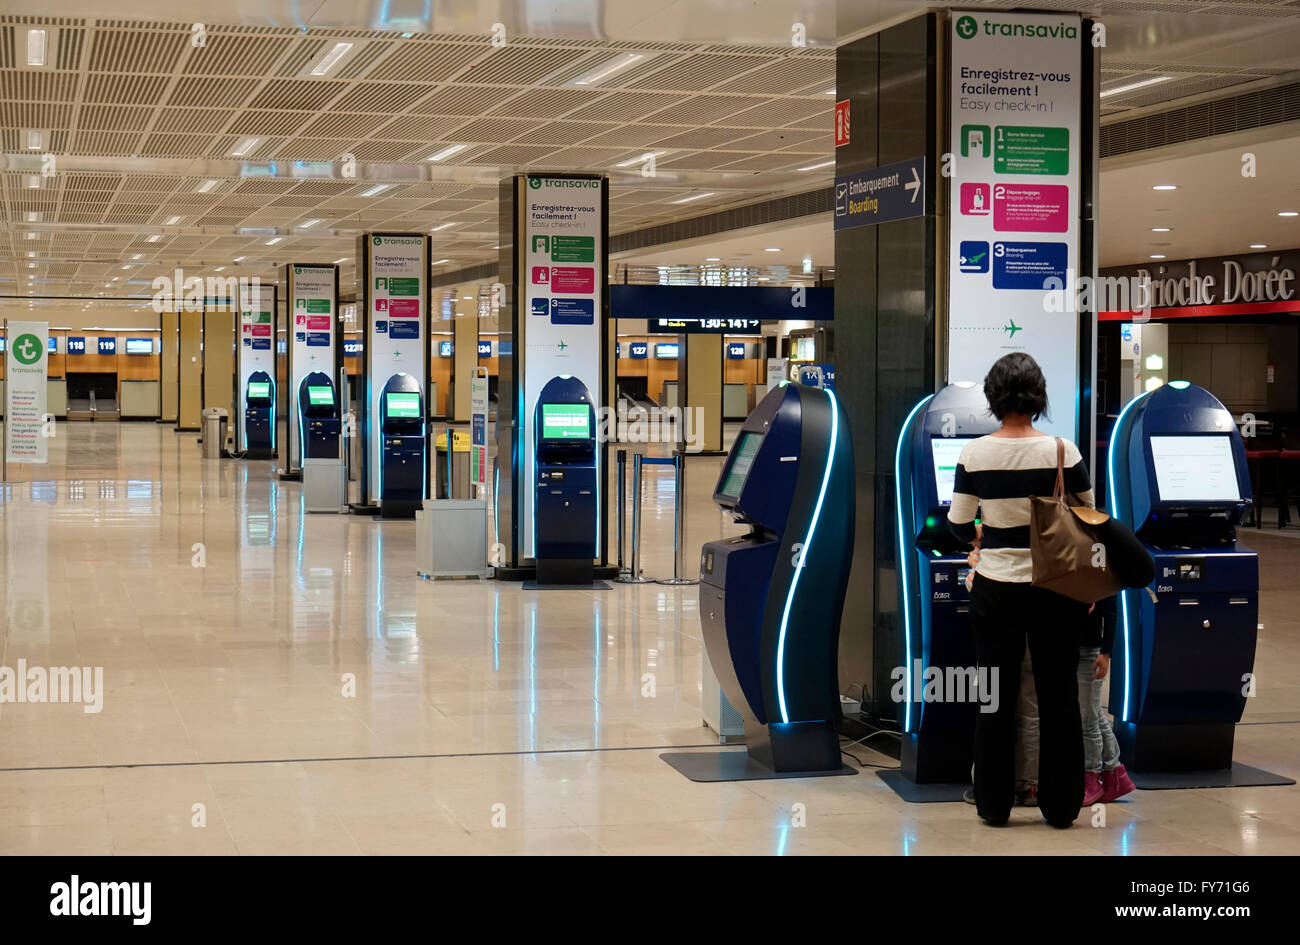 Passager utilisant l'enregistrement électronique dans la machine dans le hall de départ de l'aéroport de Paris Orly, Paris France Banque D'Images